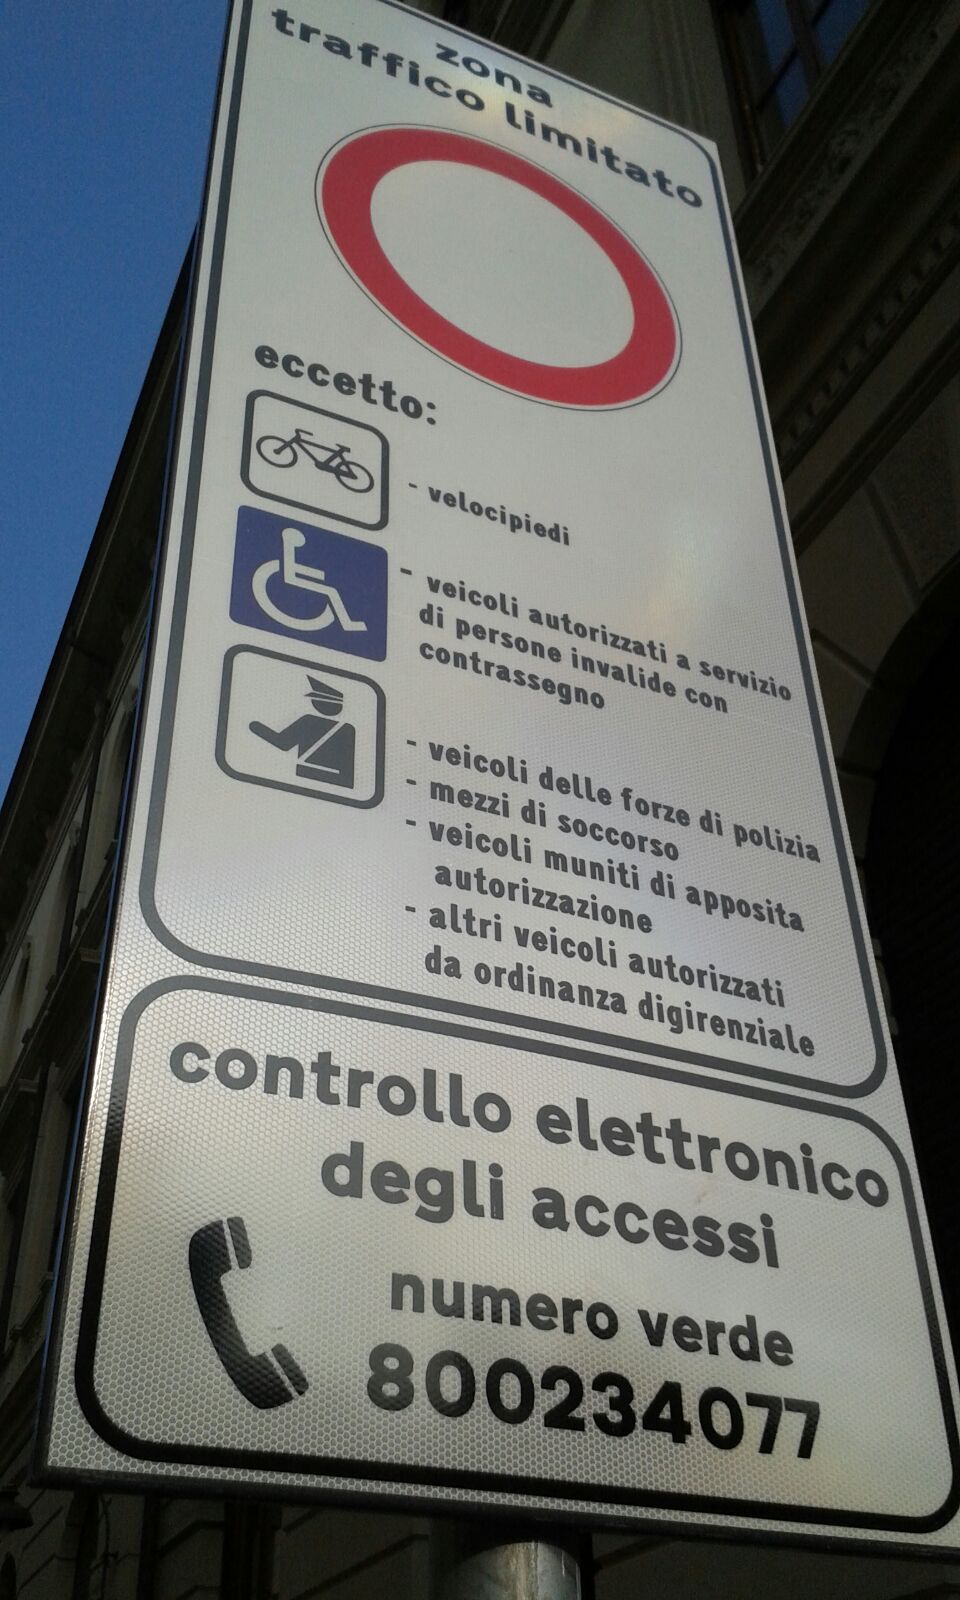 divieto di accesso eccetto biciclette e autorizzati